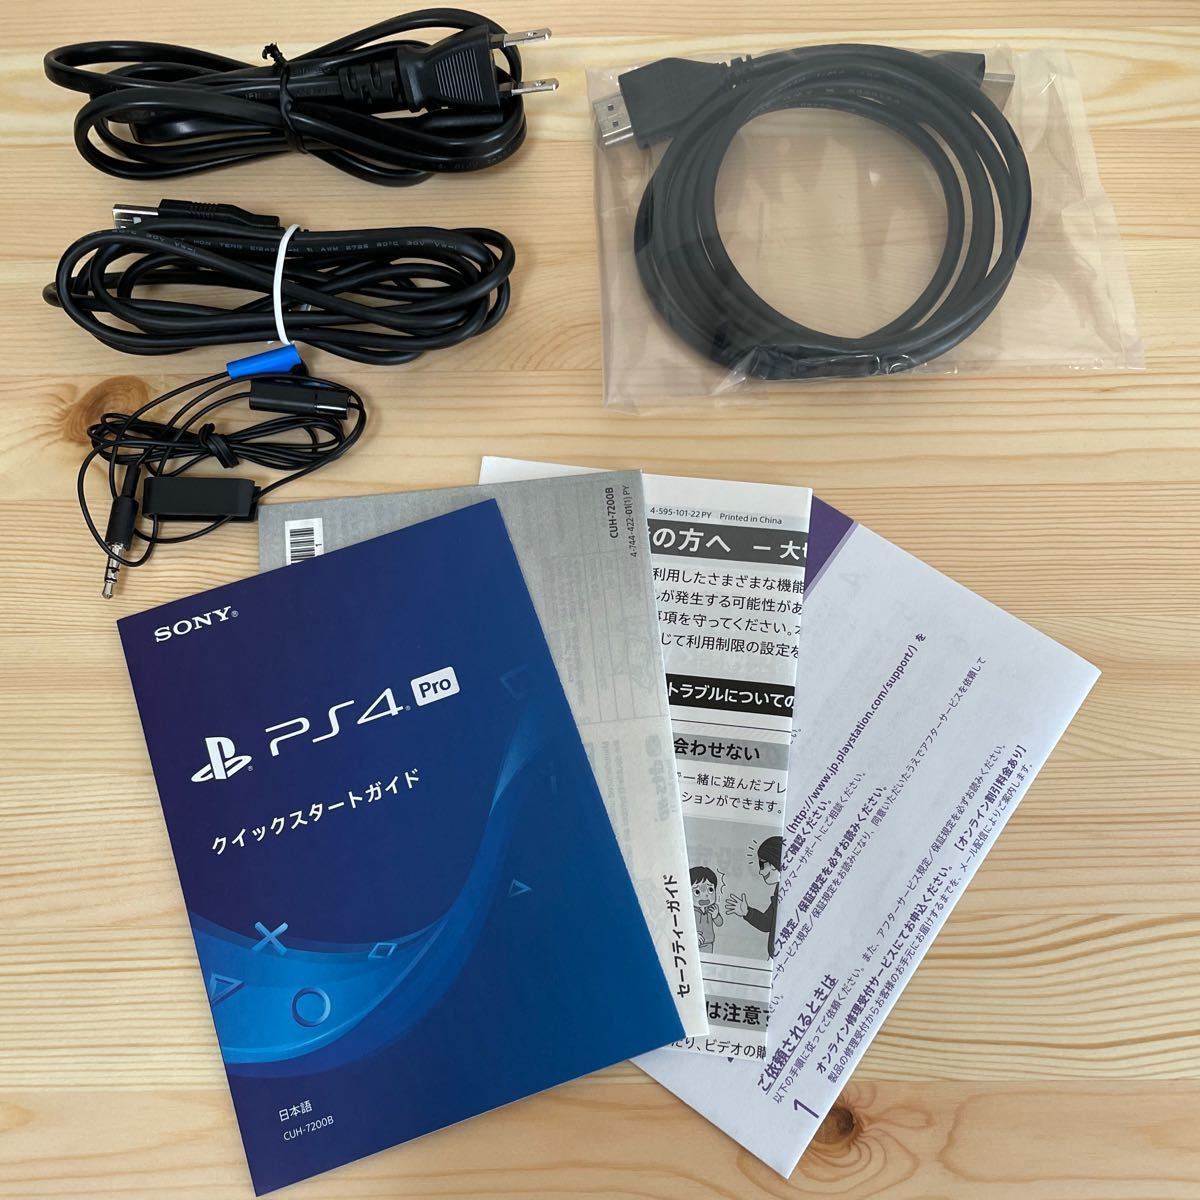 PlayStation4 Pro “モンスターハンターワールド:アイスボーン マスターエディション” Starter Pack